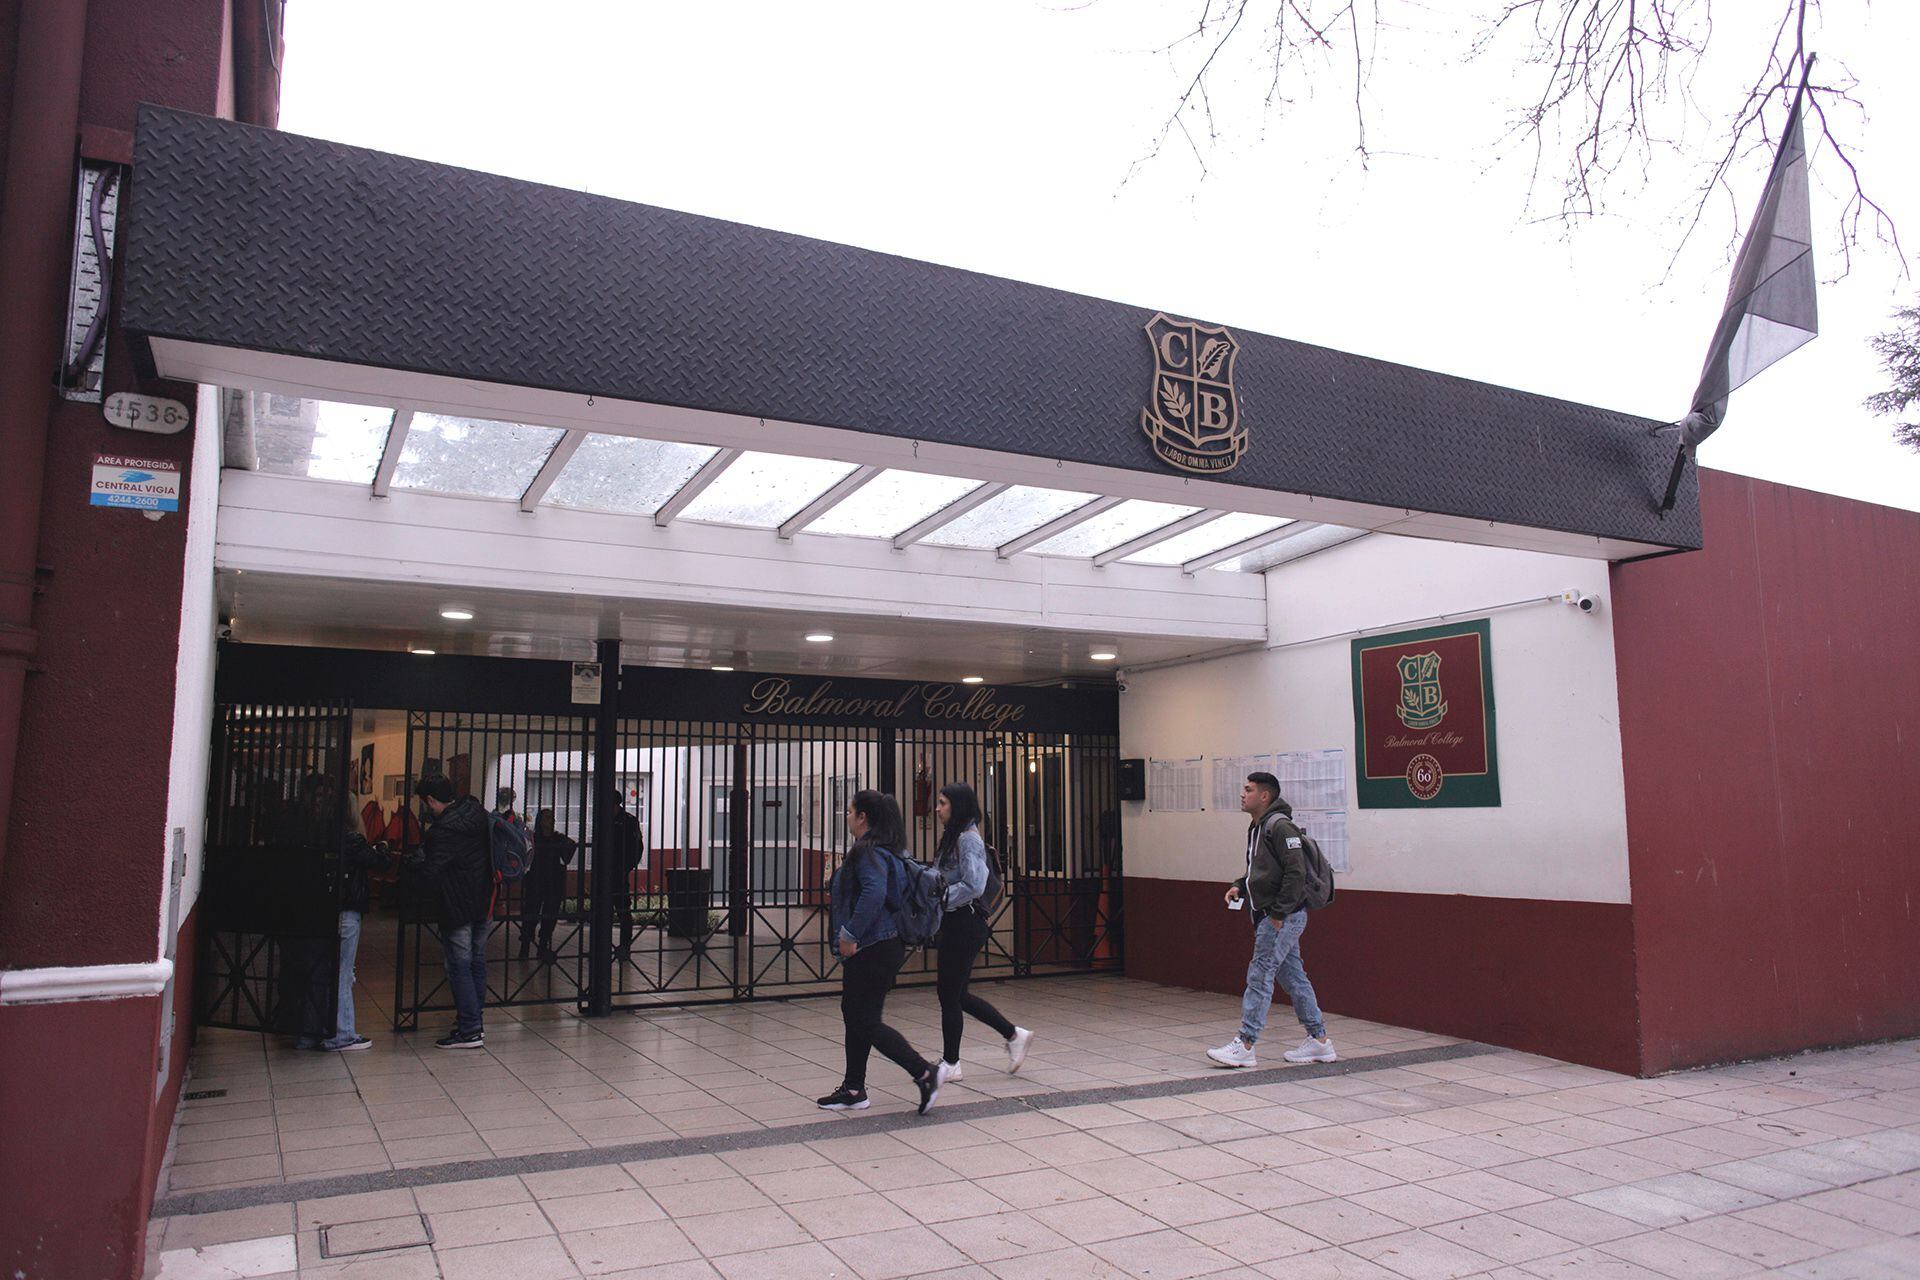 El colegio Balmoral en Banfield, lugar de votación de Martín Insaurralde en las elecciones presidenciales (Fotos: Roberto Almeida)